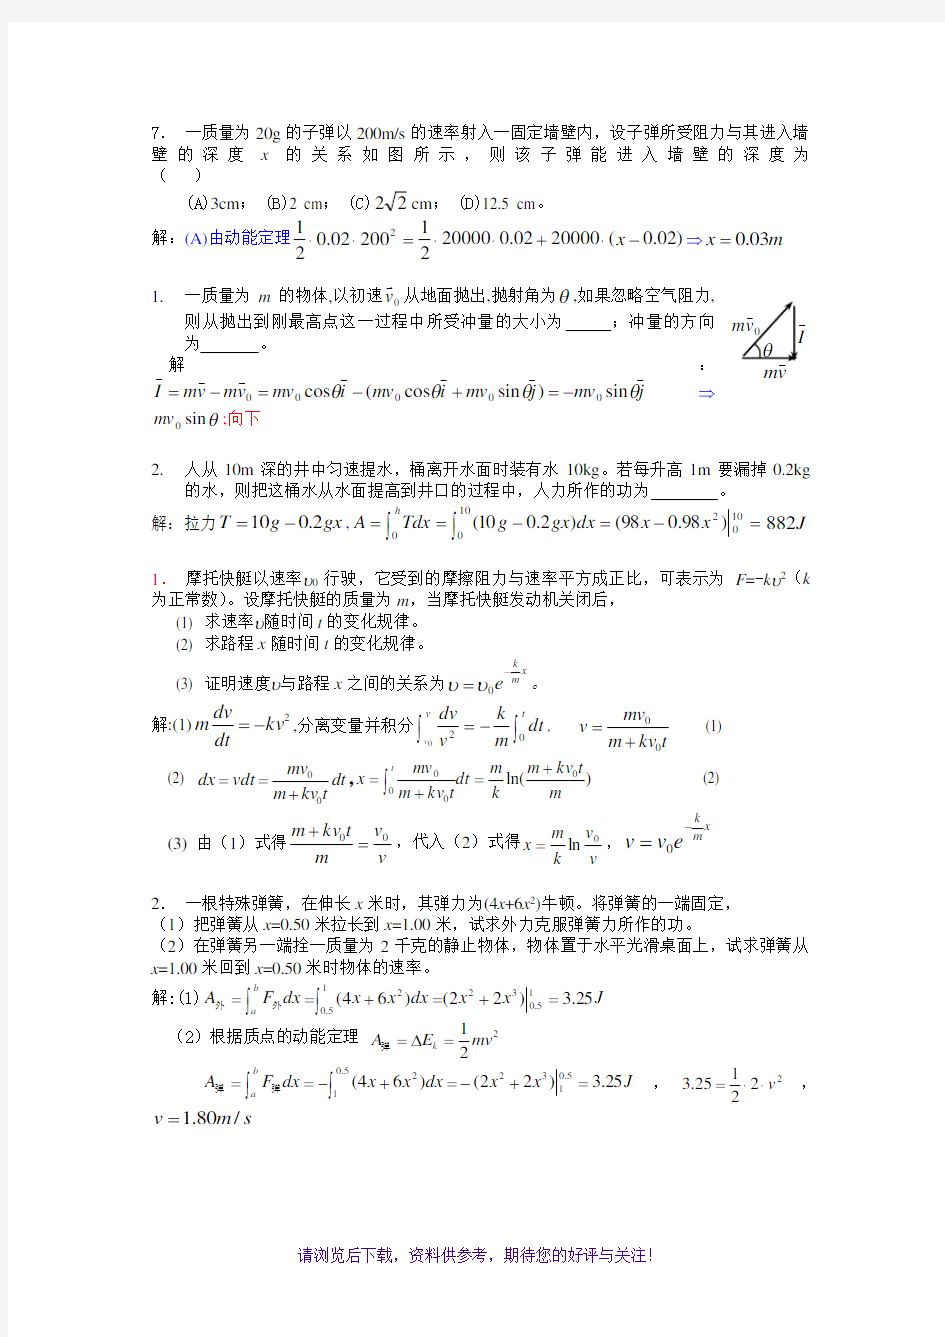 江苏大学大学物理练习册重点题